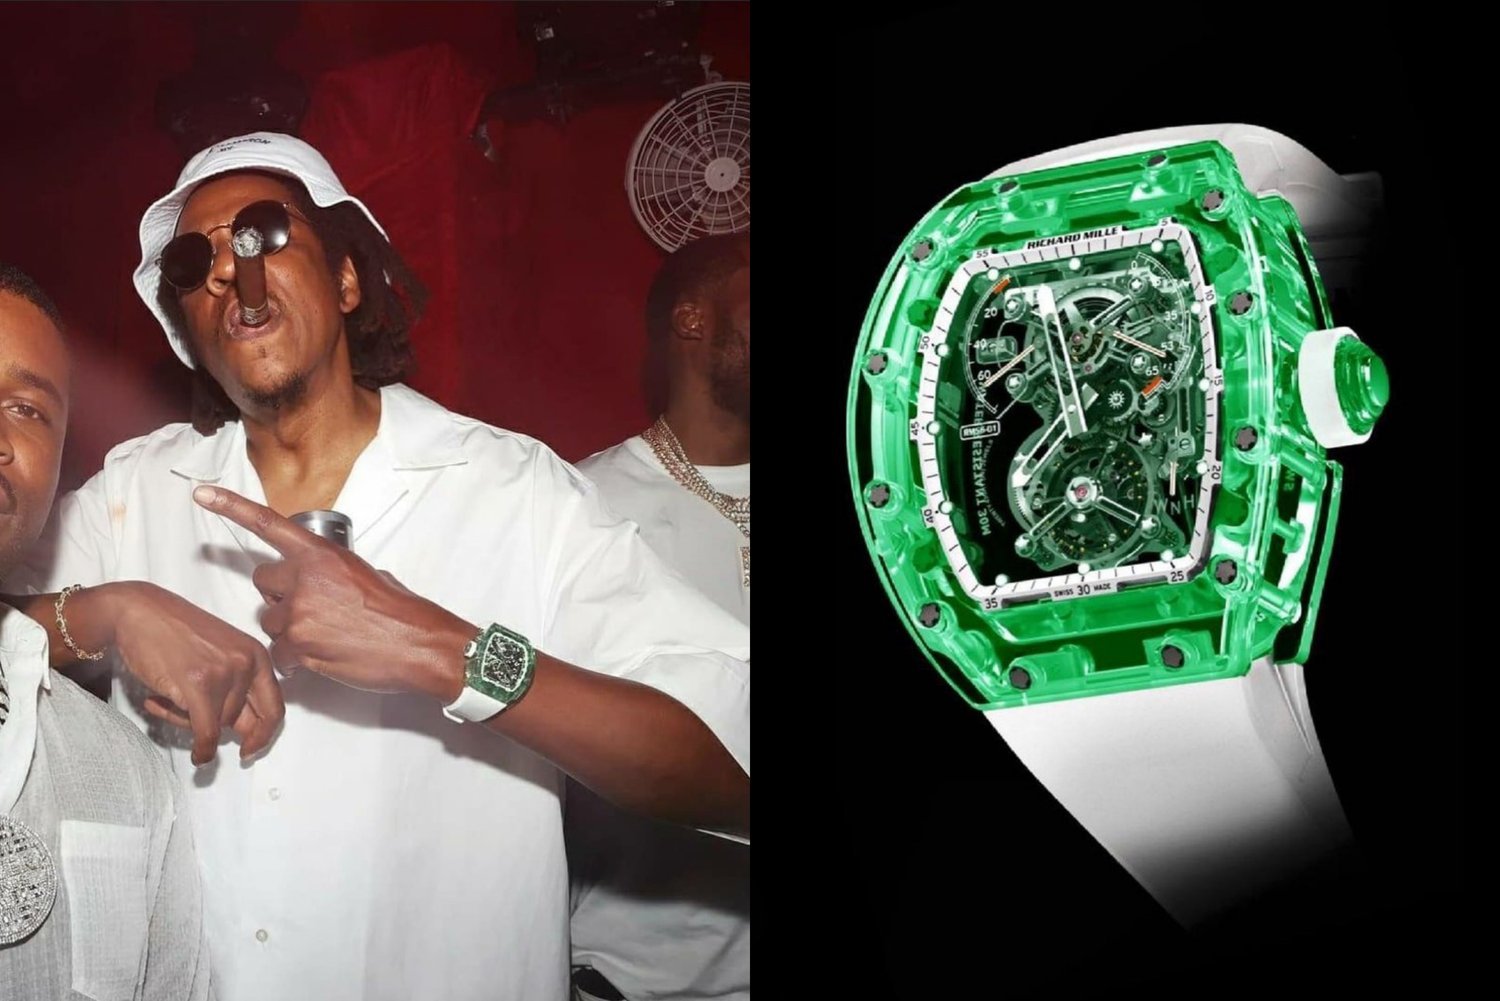 Inside Jay-Z's eye-watering multi-million dollar luxury watch collection